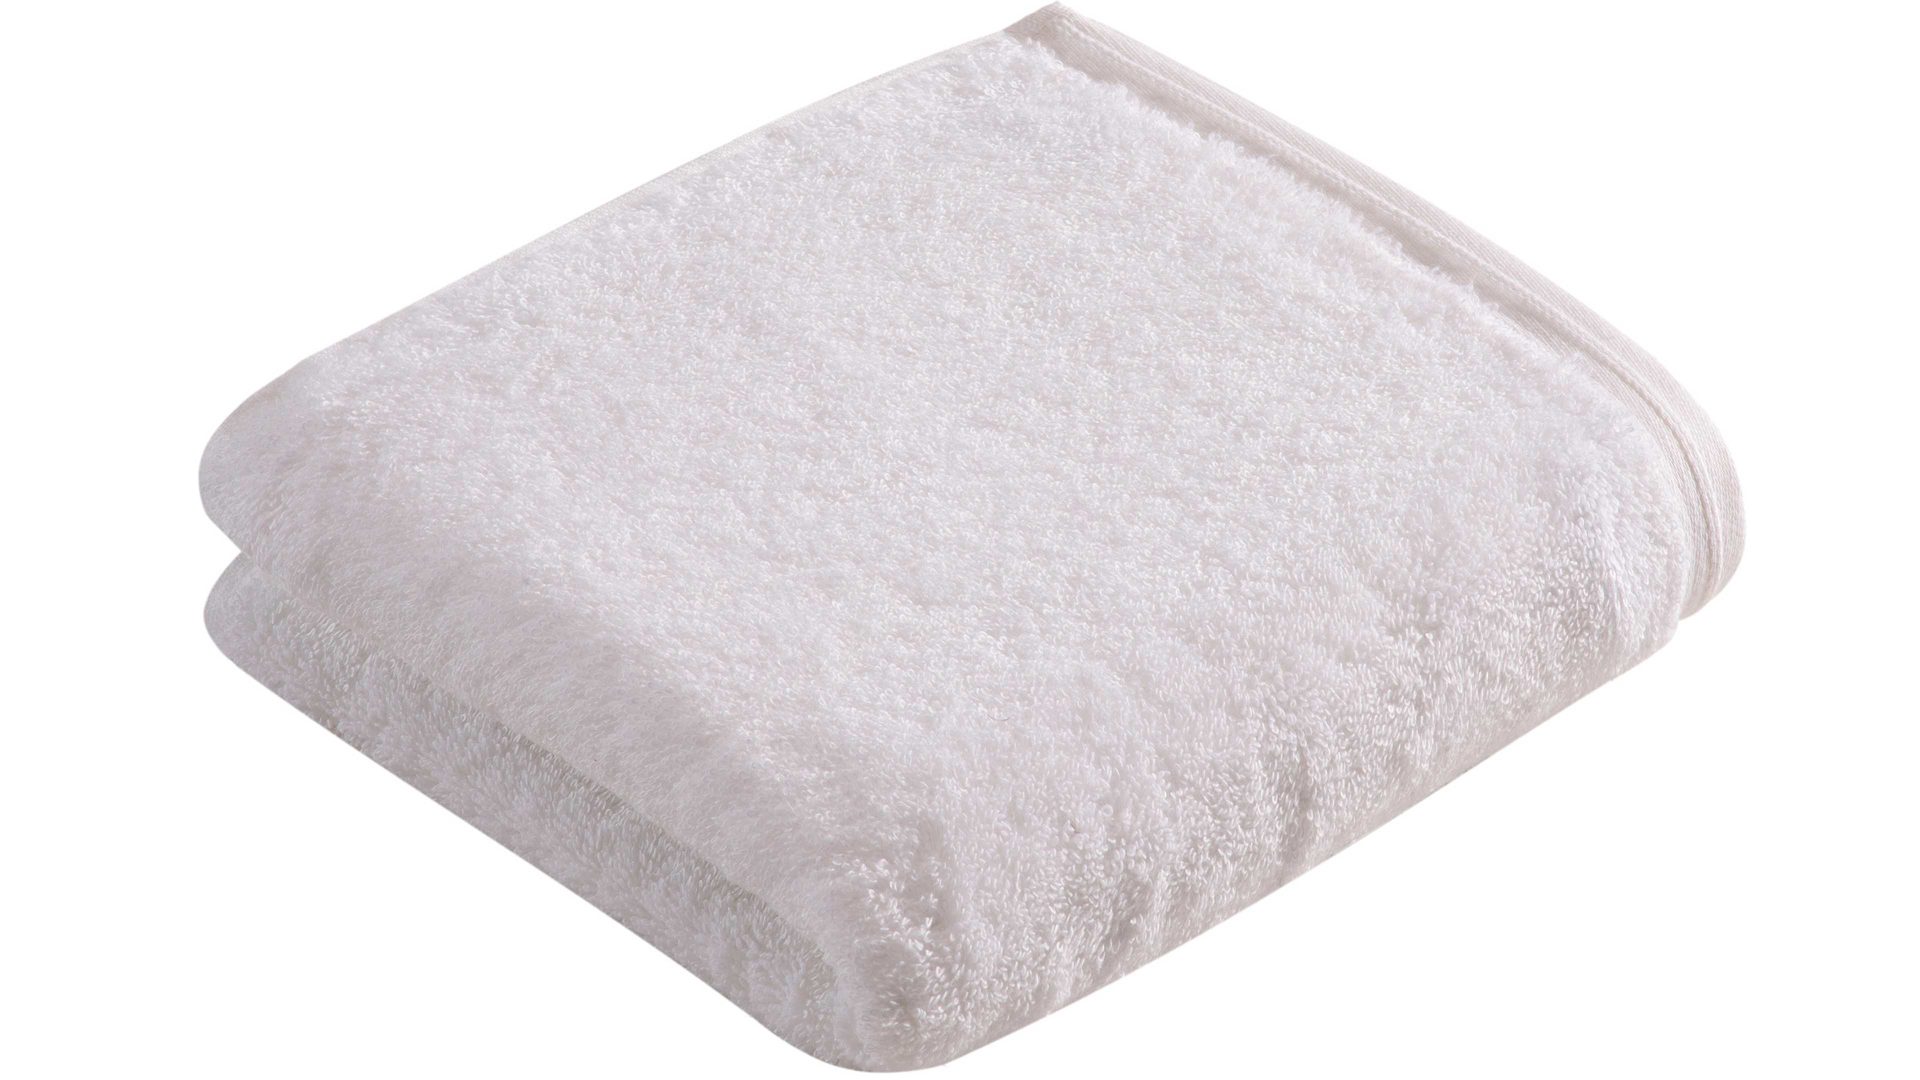 Handtuch Vossen aus Naturfaser in Weiß VOSSEN® Handtuchserie Vegan Life – Handtuch weißer Baumwoll-Frottee – ca. 50 x 100 cm